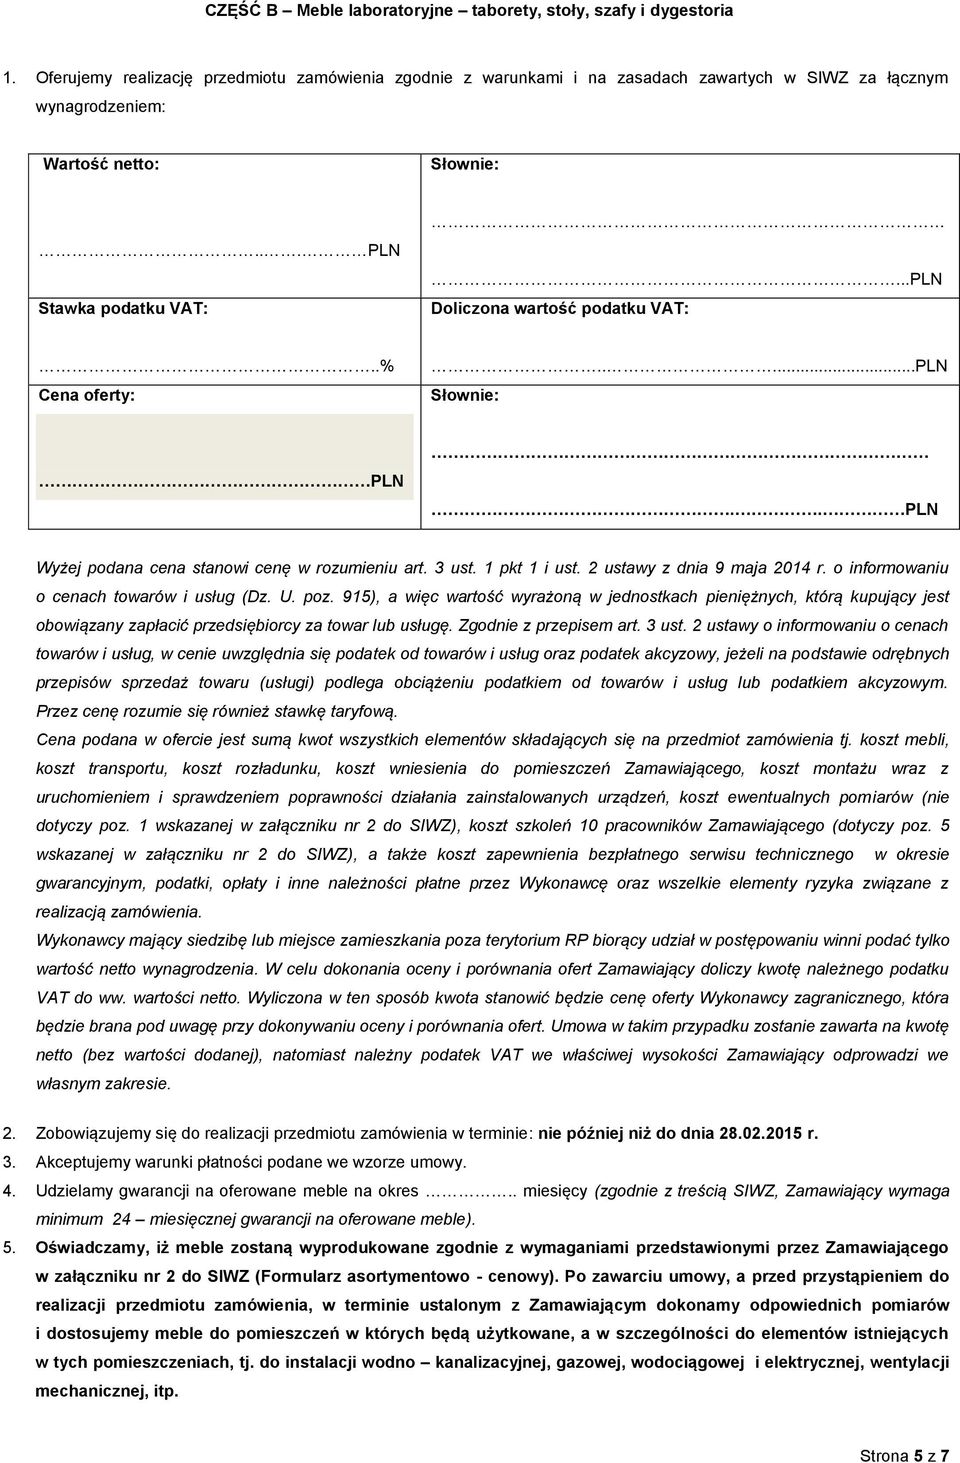 .% Cena oferty:.....pln PLN.. PLN Wyżej podana cena stanowi cenę w rozumieniu art. 3 ust. 1 pkt 1 i ust. 2 ustawy z dnia 9 maja 2014 r. o informowaniu o cenach towarów i usług (Dz. U. poz.